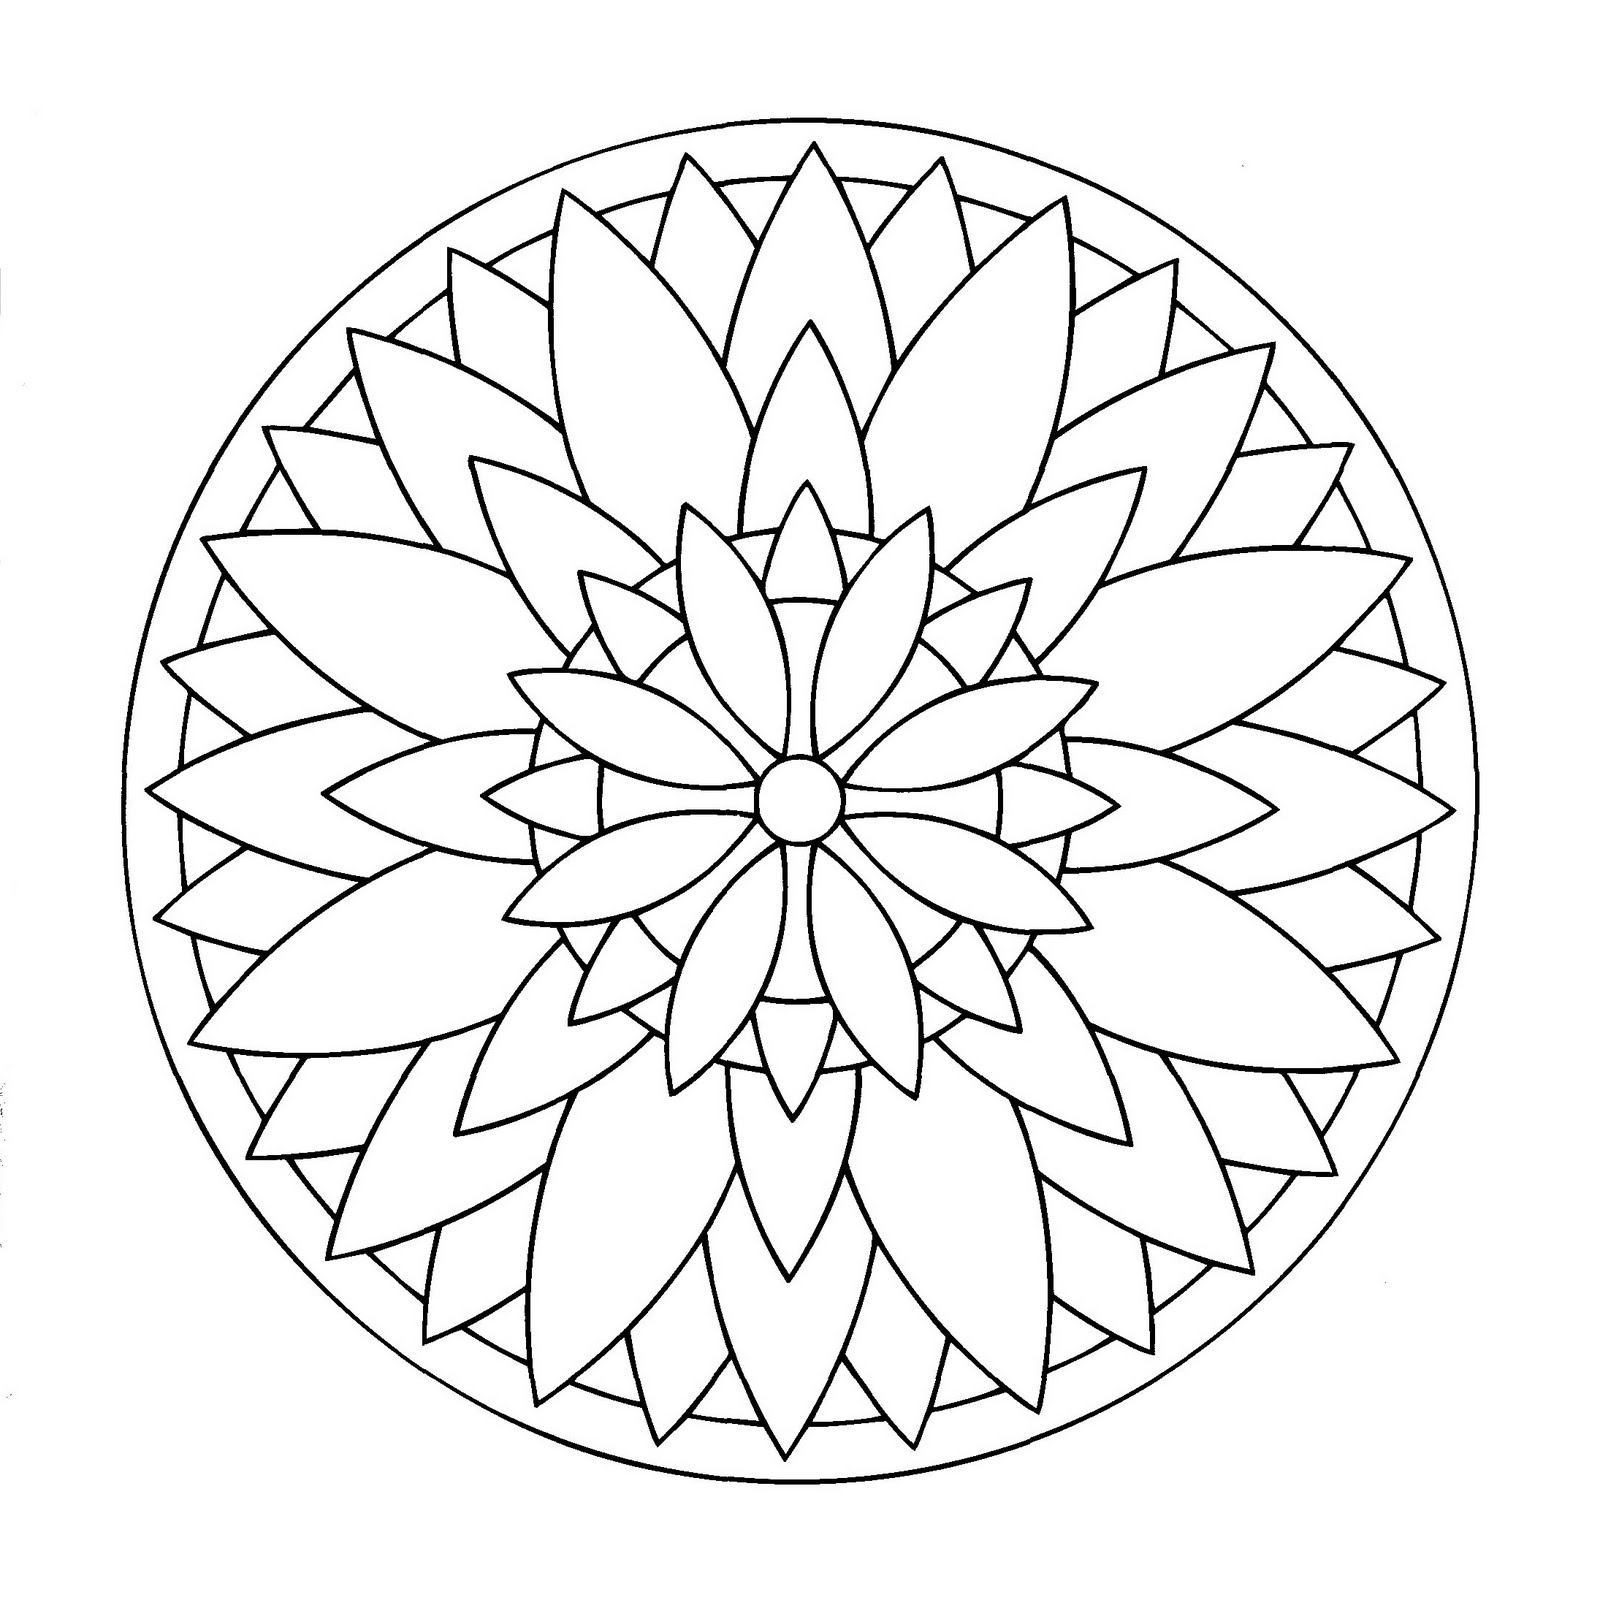 Disegno di mandala con spirali che rappresentano un grande fiore. Facile da colorare.